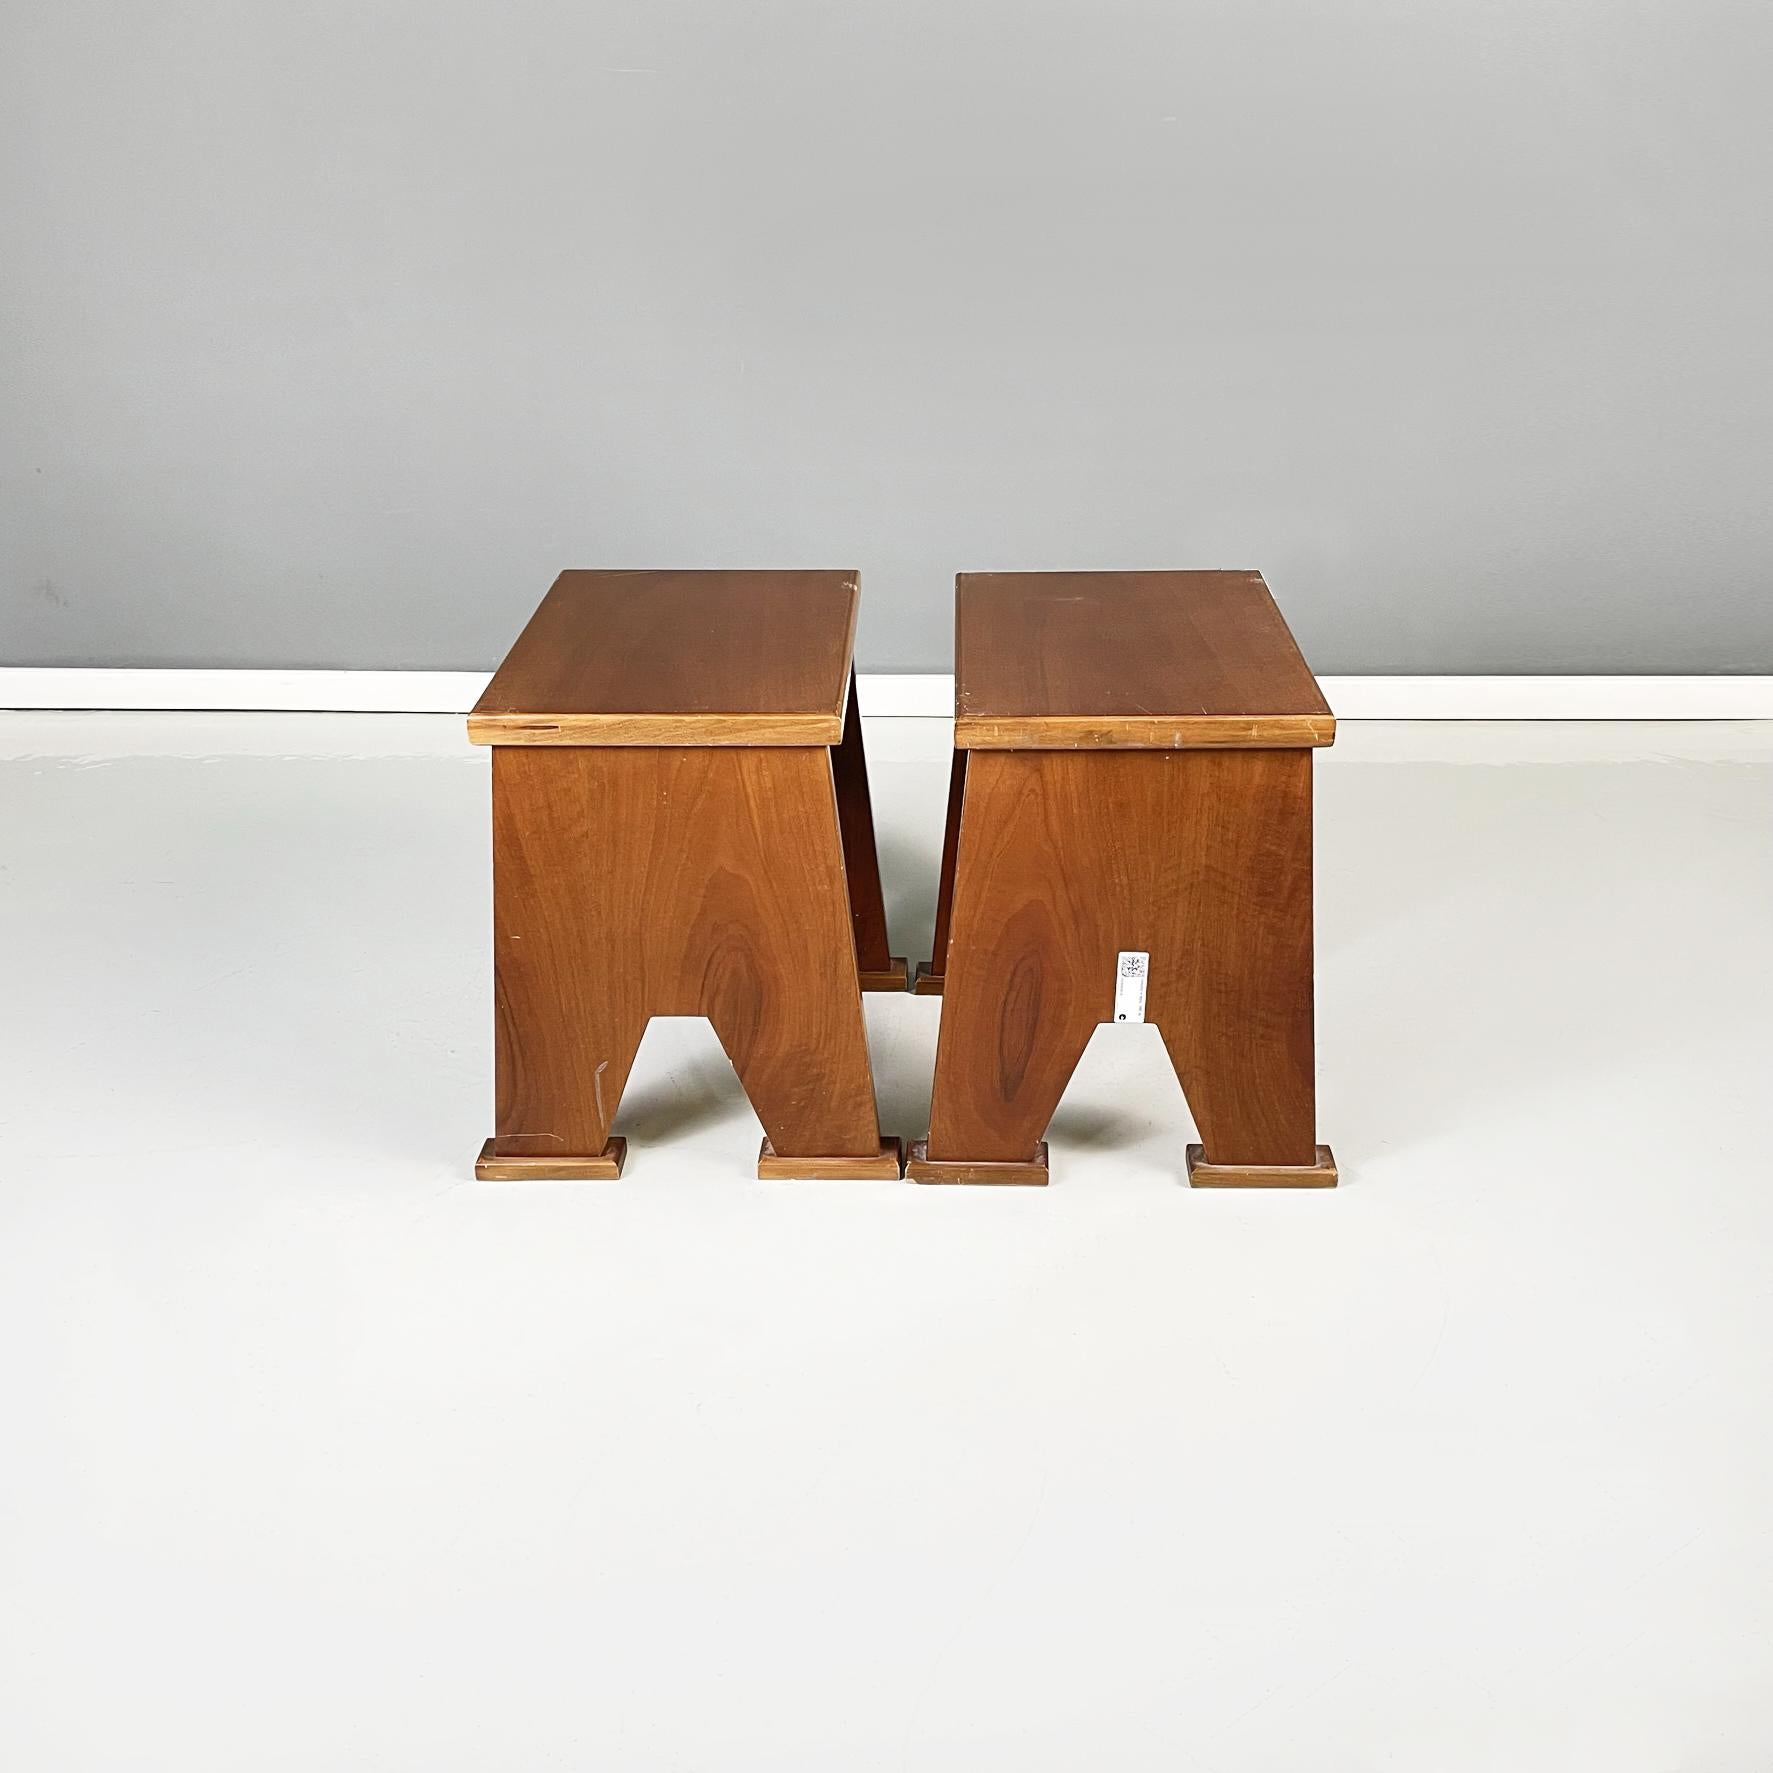 Tabourets rectangulaires italiens modernes en bois de style art déco, 1970
Paire de tabourets avec assise rectangulaire en bois. Les pieds sont de section rectangulaire et sont reliés au milieu par une poutre. Pieds rectangulaires. Utilisables